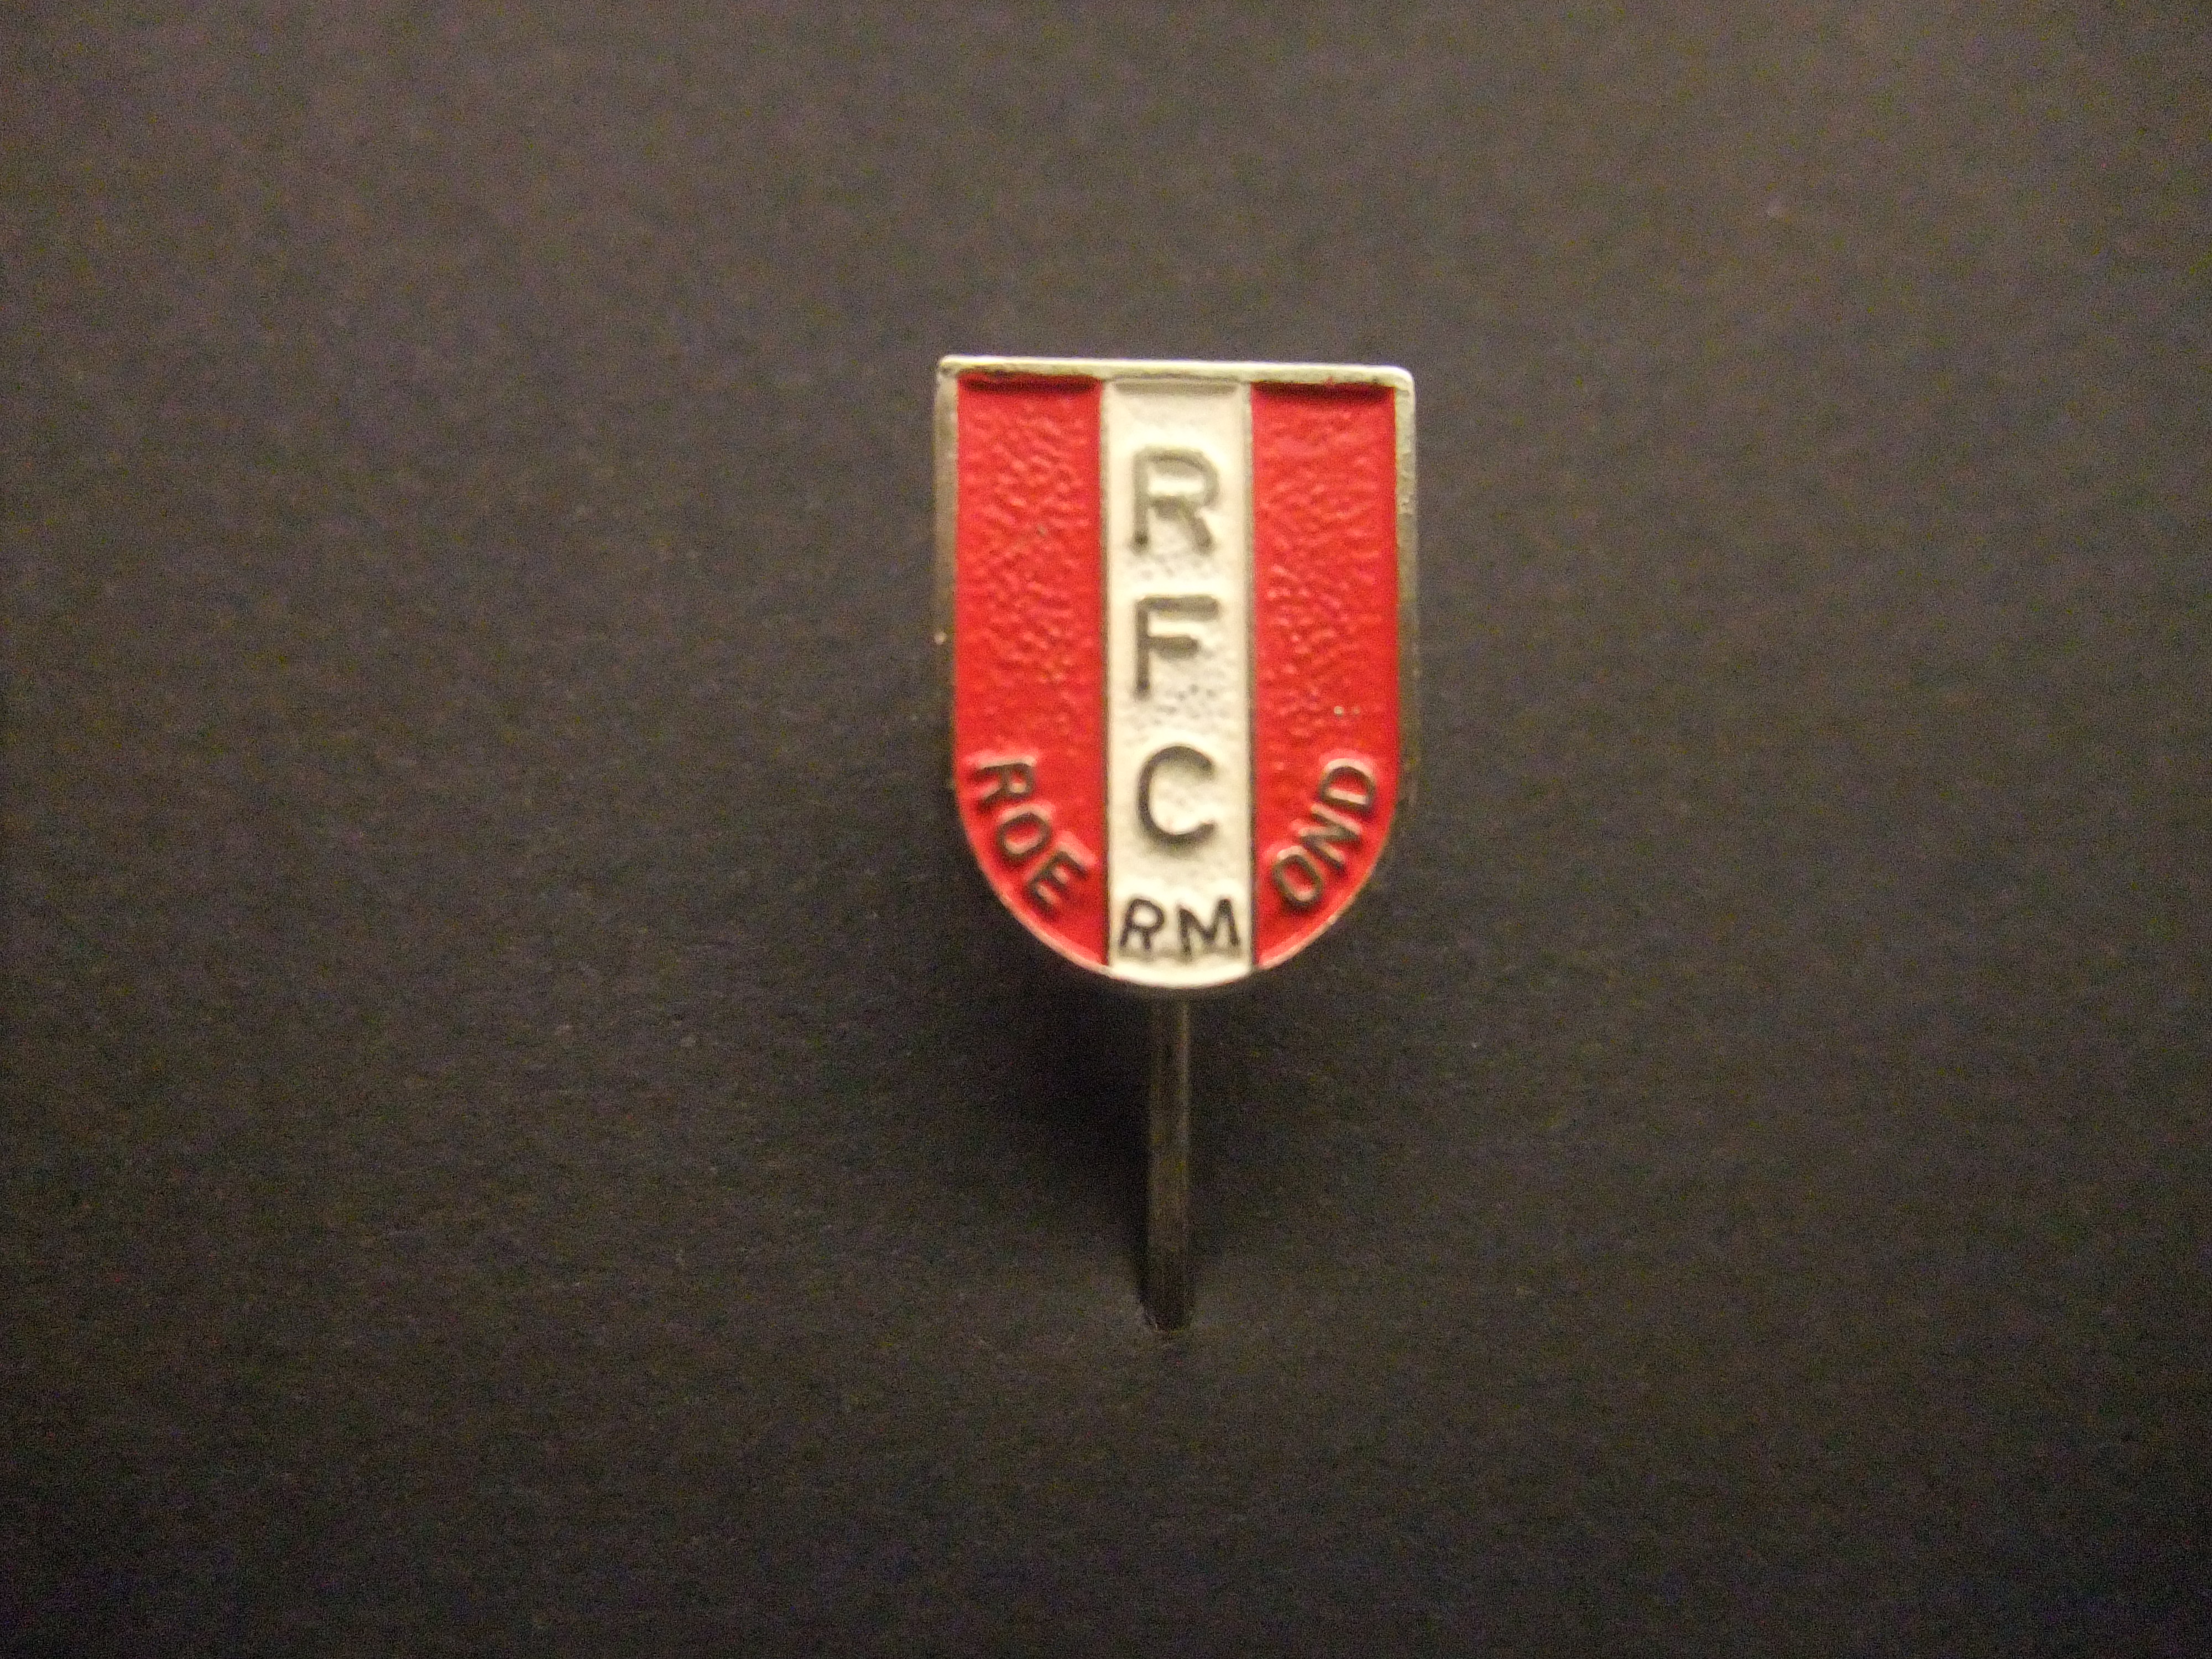 RFC Roermond (Roermondse Football Club) amateurvoetbalclub